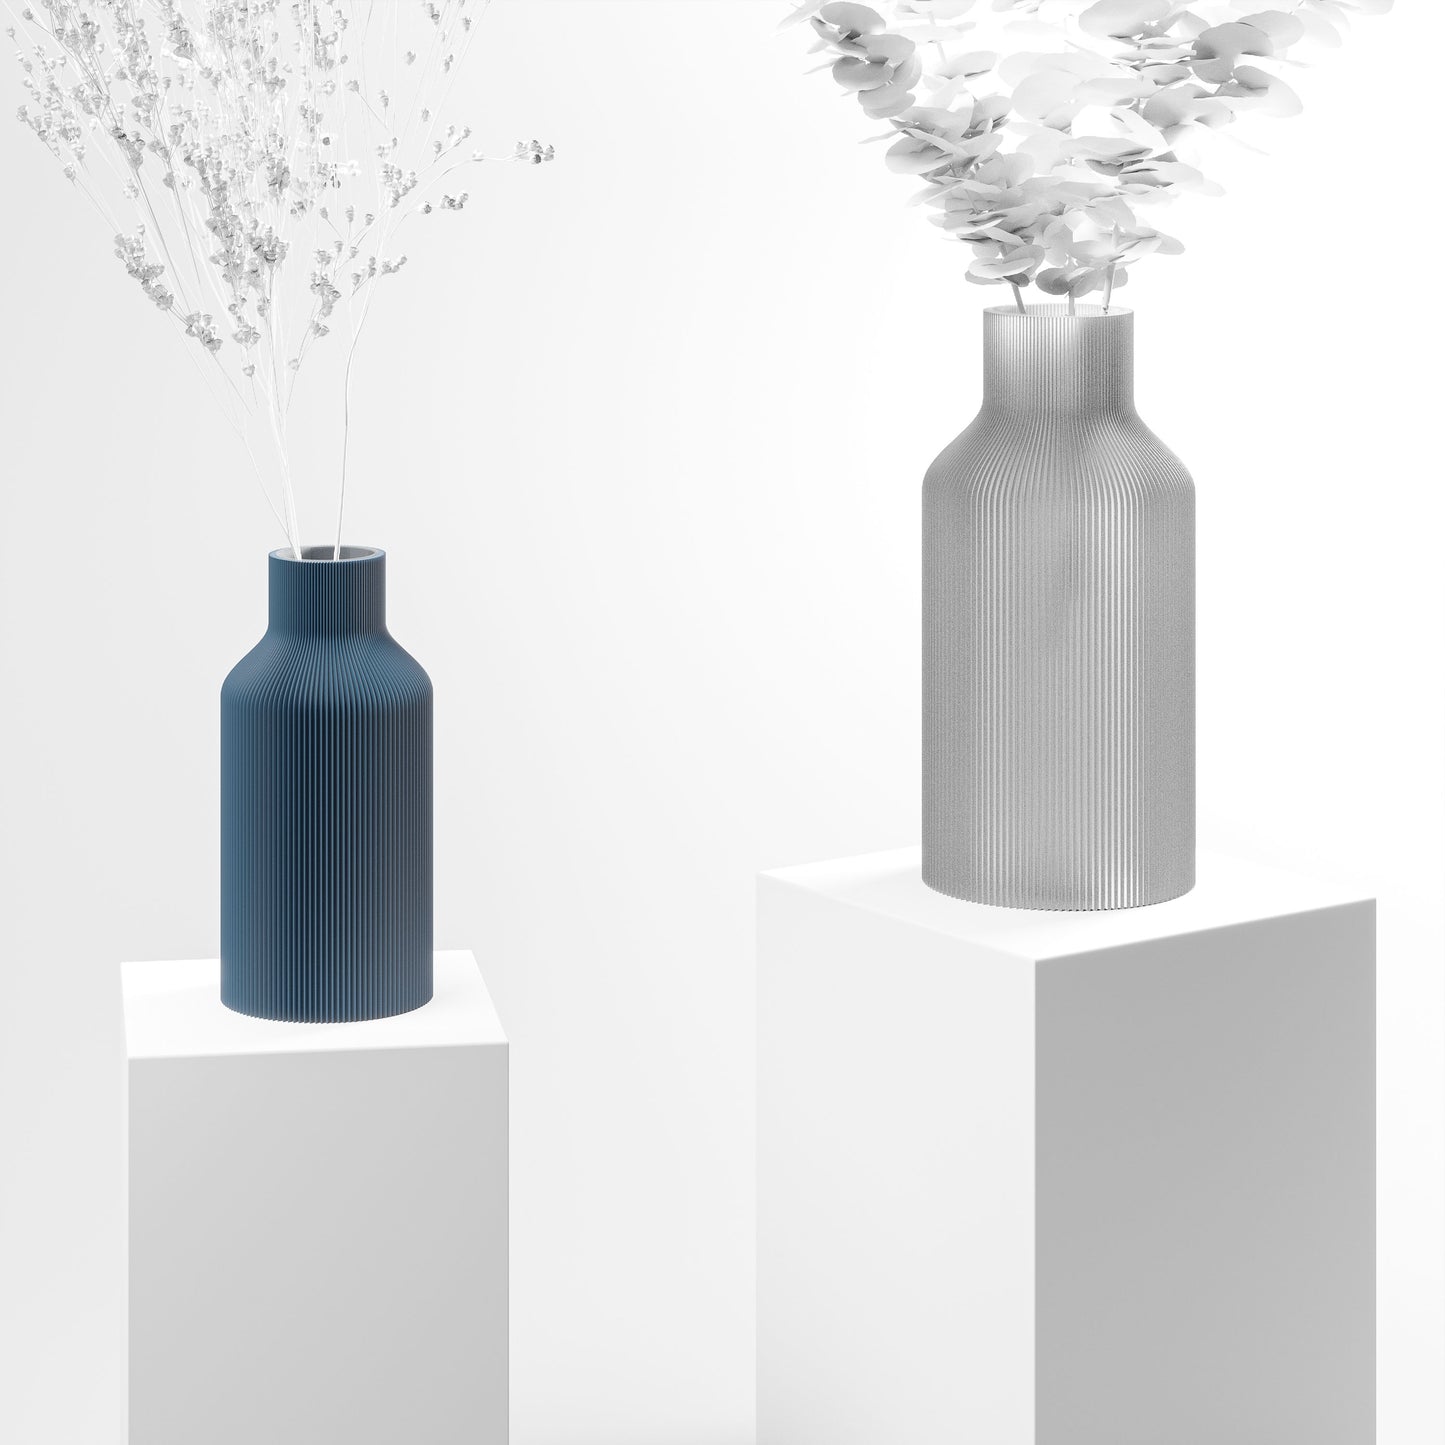 Stylische 3D Druck Vase mit feinen Rillen aus Stuttgart | 100% recyclebar | Form: Flasche | Farbe: blau matt klein